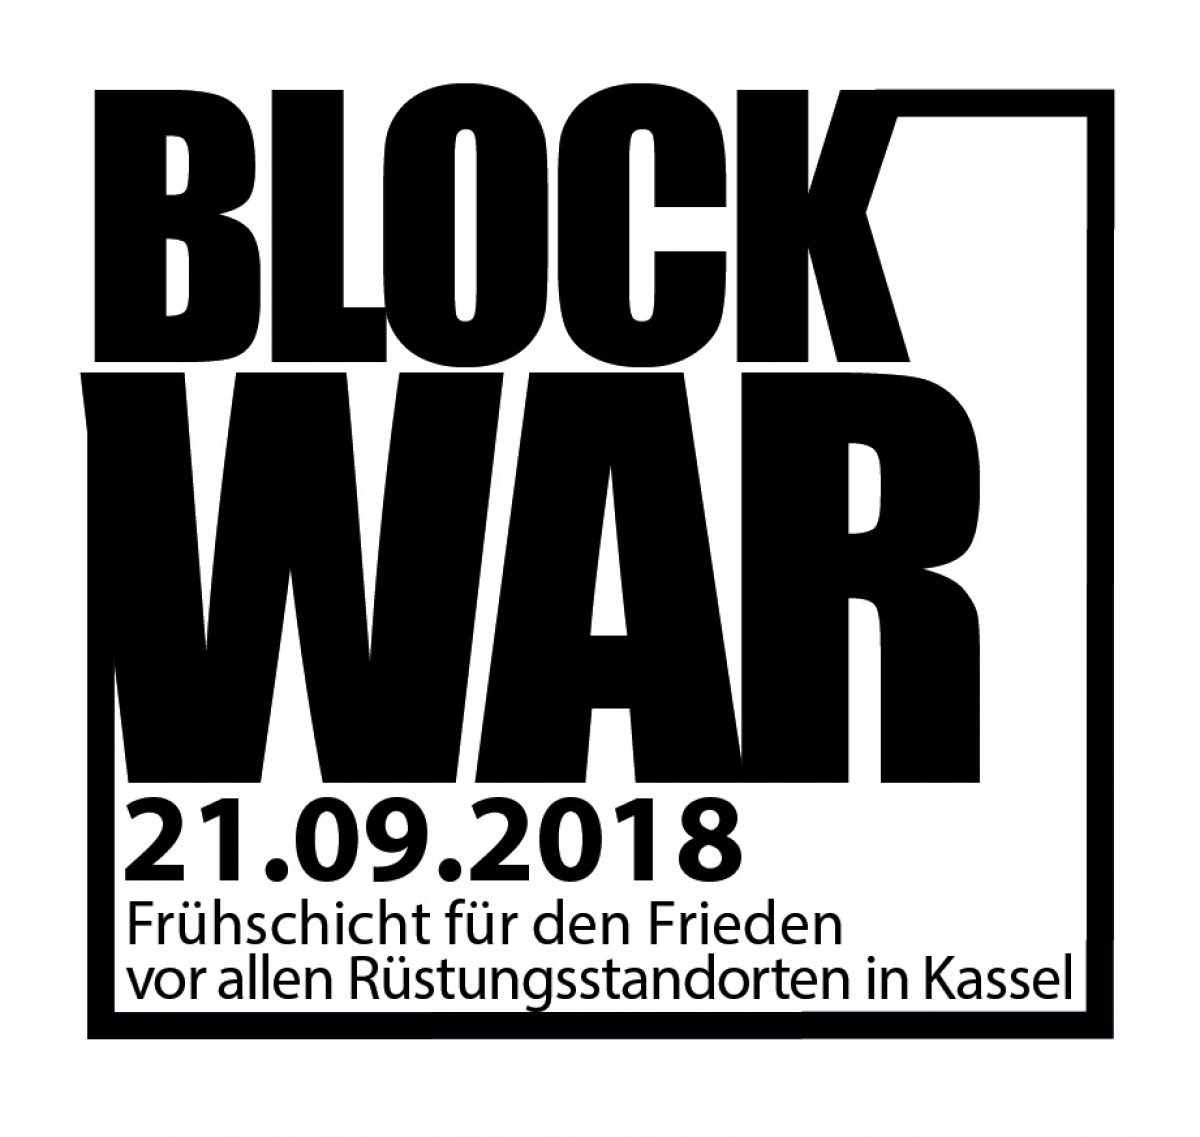 Block War! Am 21. September werden viele Menschen in #Kassel früh morgens die Zugänge zu den diversenen Waffenfabriken blockieren! War starts here - let's end it here! Kommt zur Frühschicht für den Frieden! #Antimilitarismus Account für die Aktion: @BWKassel